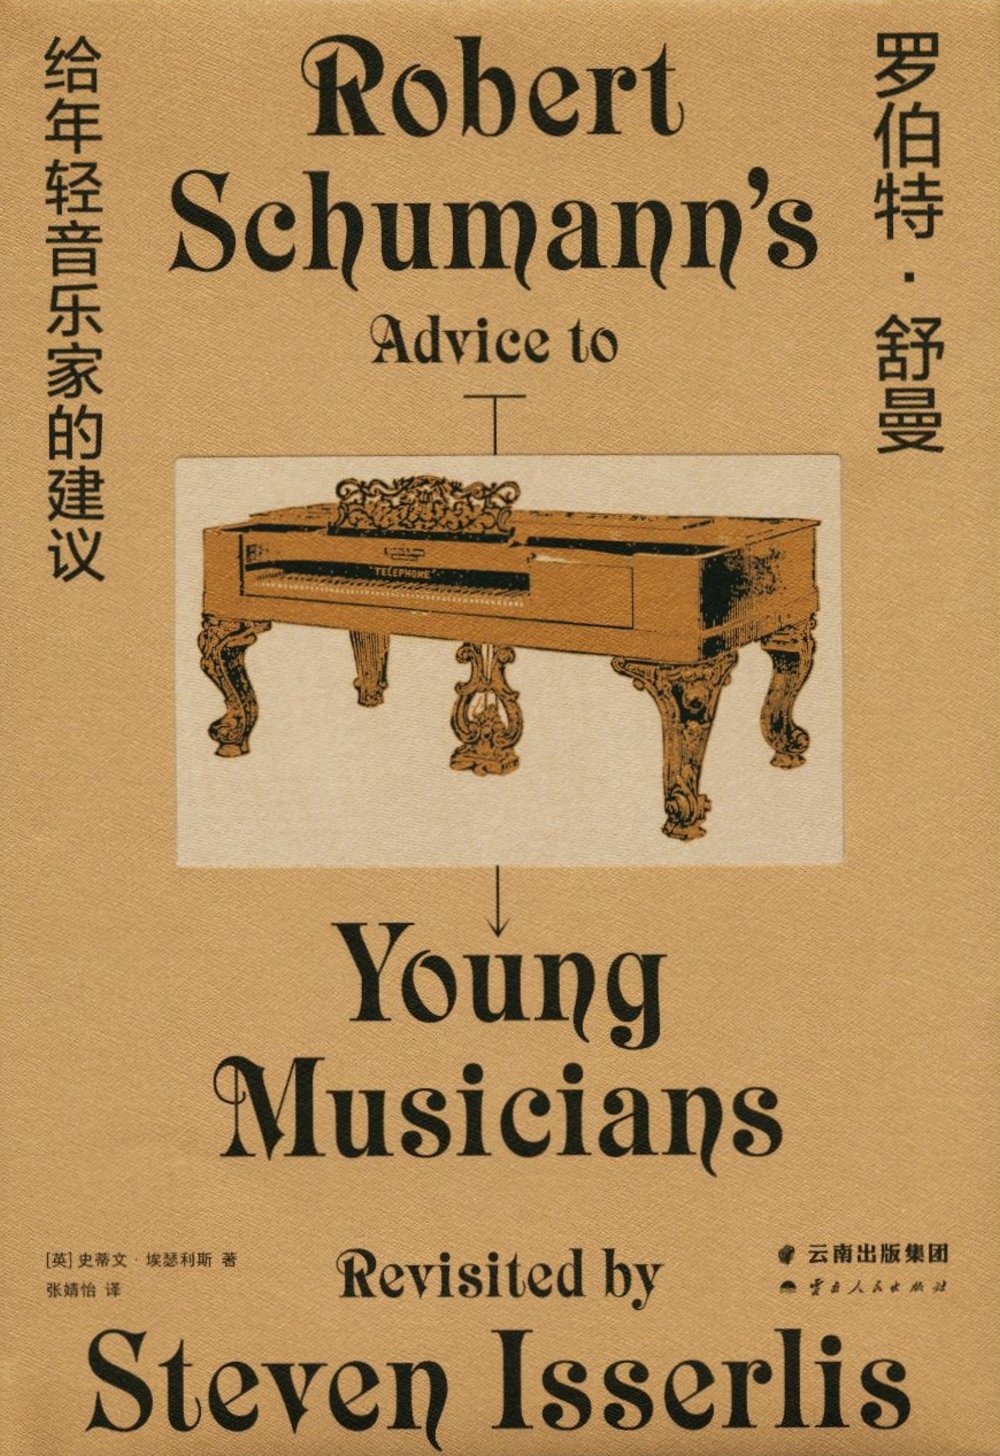 羅伯特·舒曼給年輕音樂家的建議